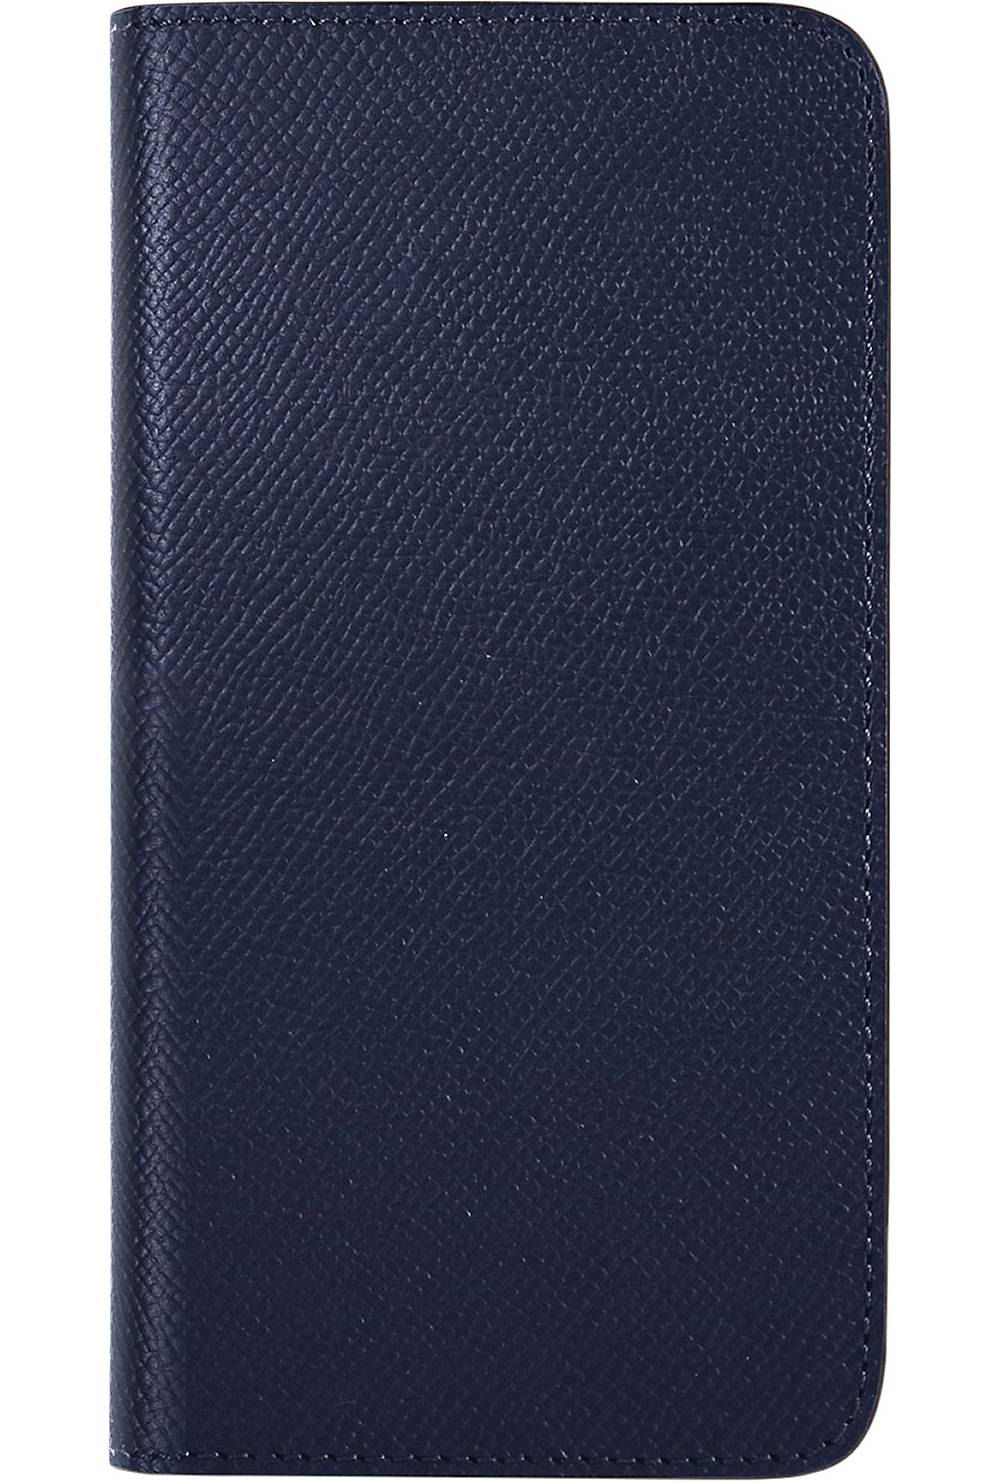 BONAVENTURA, Handyhülle Noblessa Diary Case (iphone 13 Mini) in blau, Handyhüllen & Zubehör für Damen